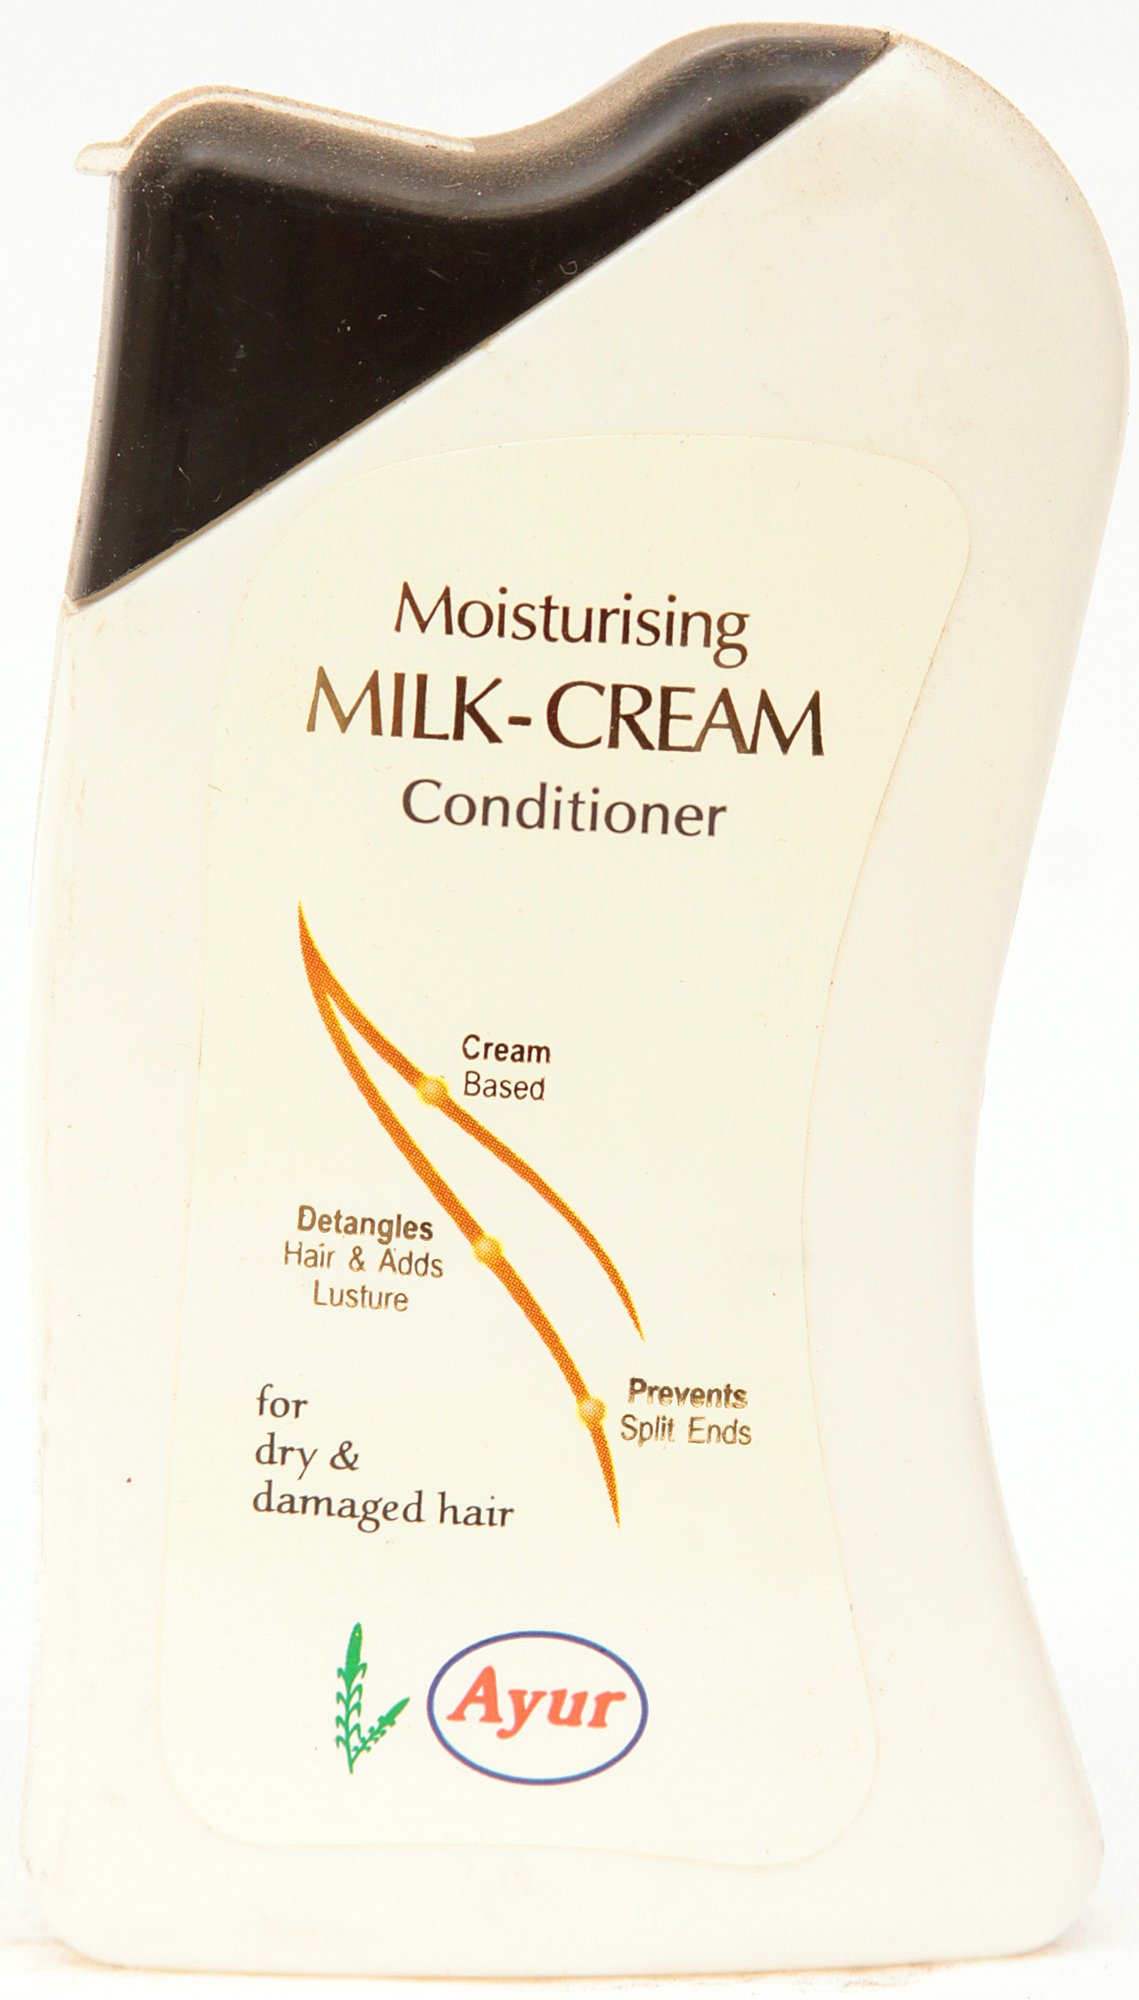 Moisturising Milk Cream Conditioner - book cover